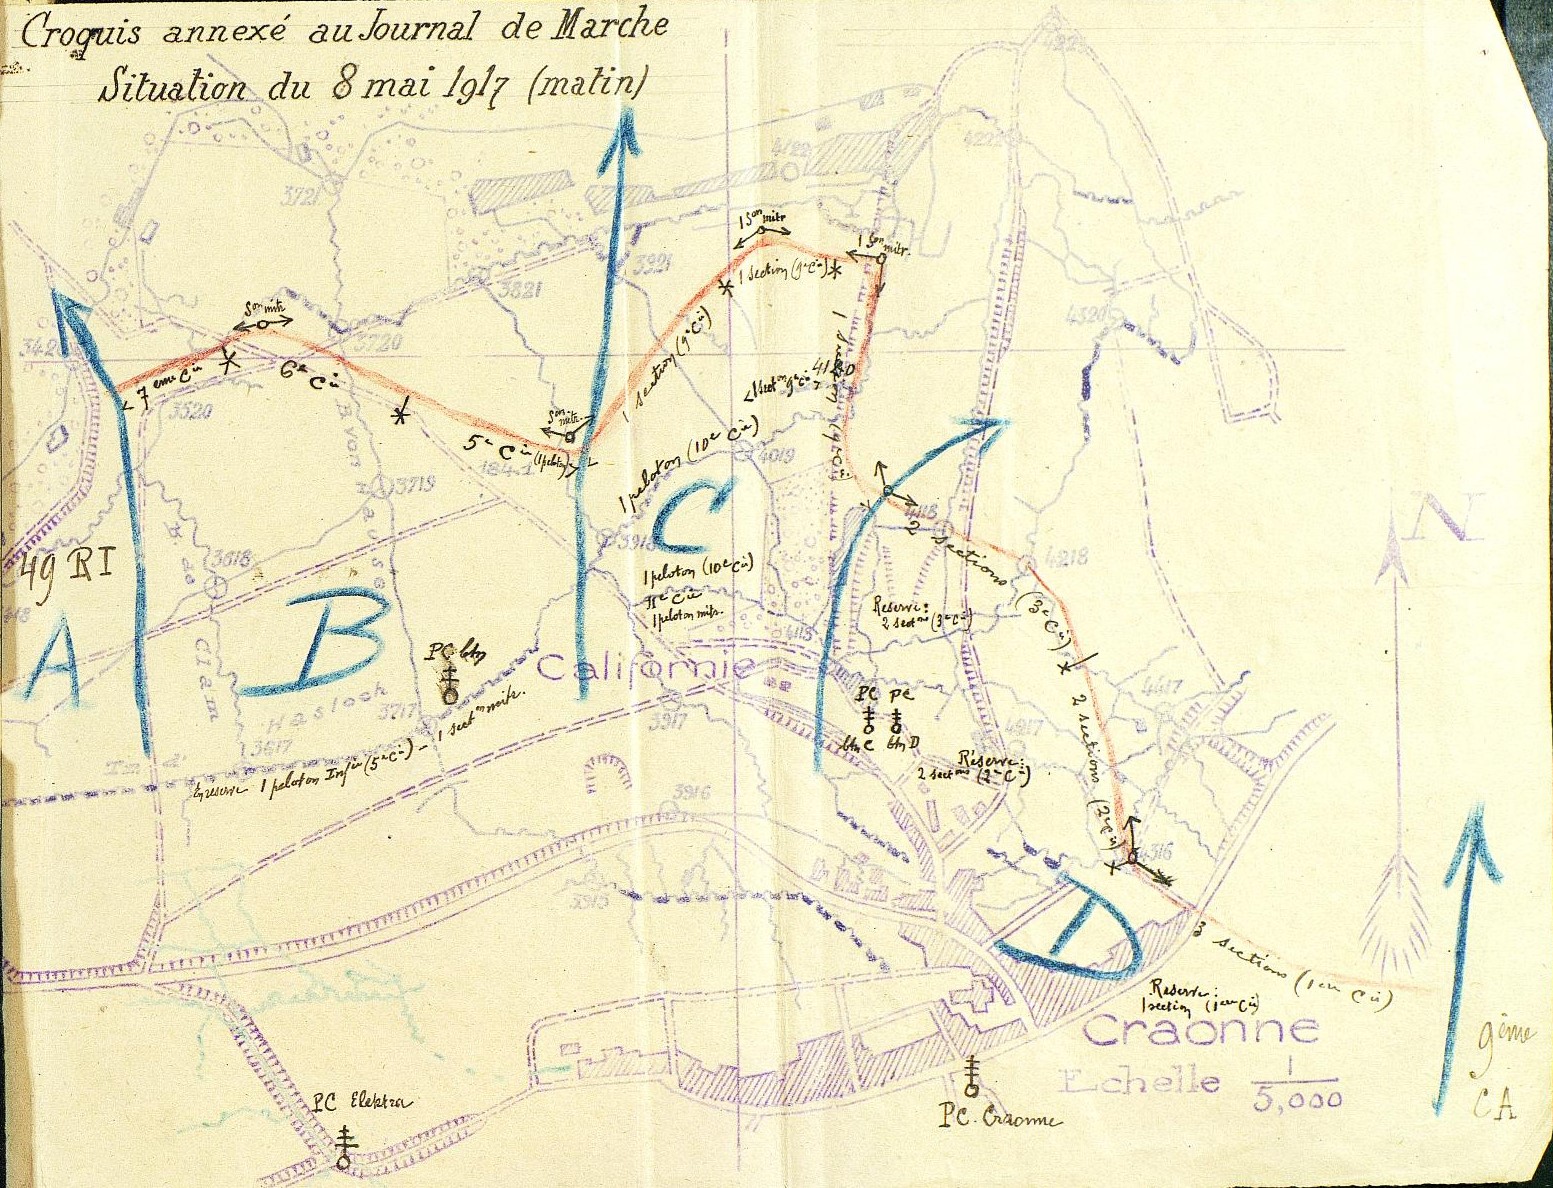 Position du 414e régiment d'infanterie à Craonne le 8 mai 1917